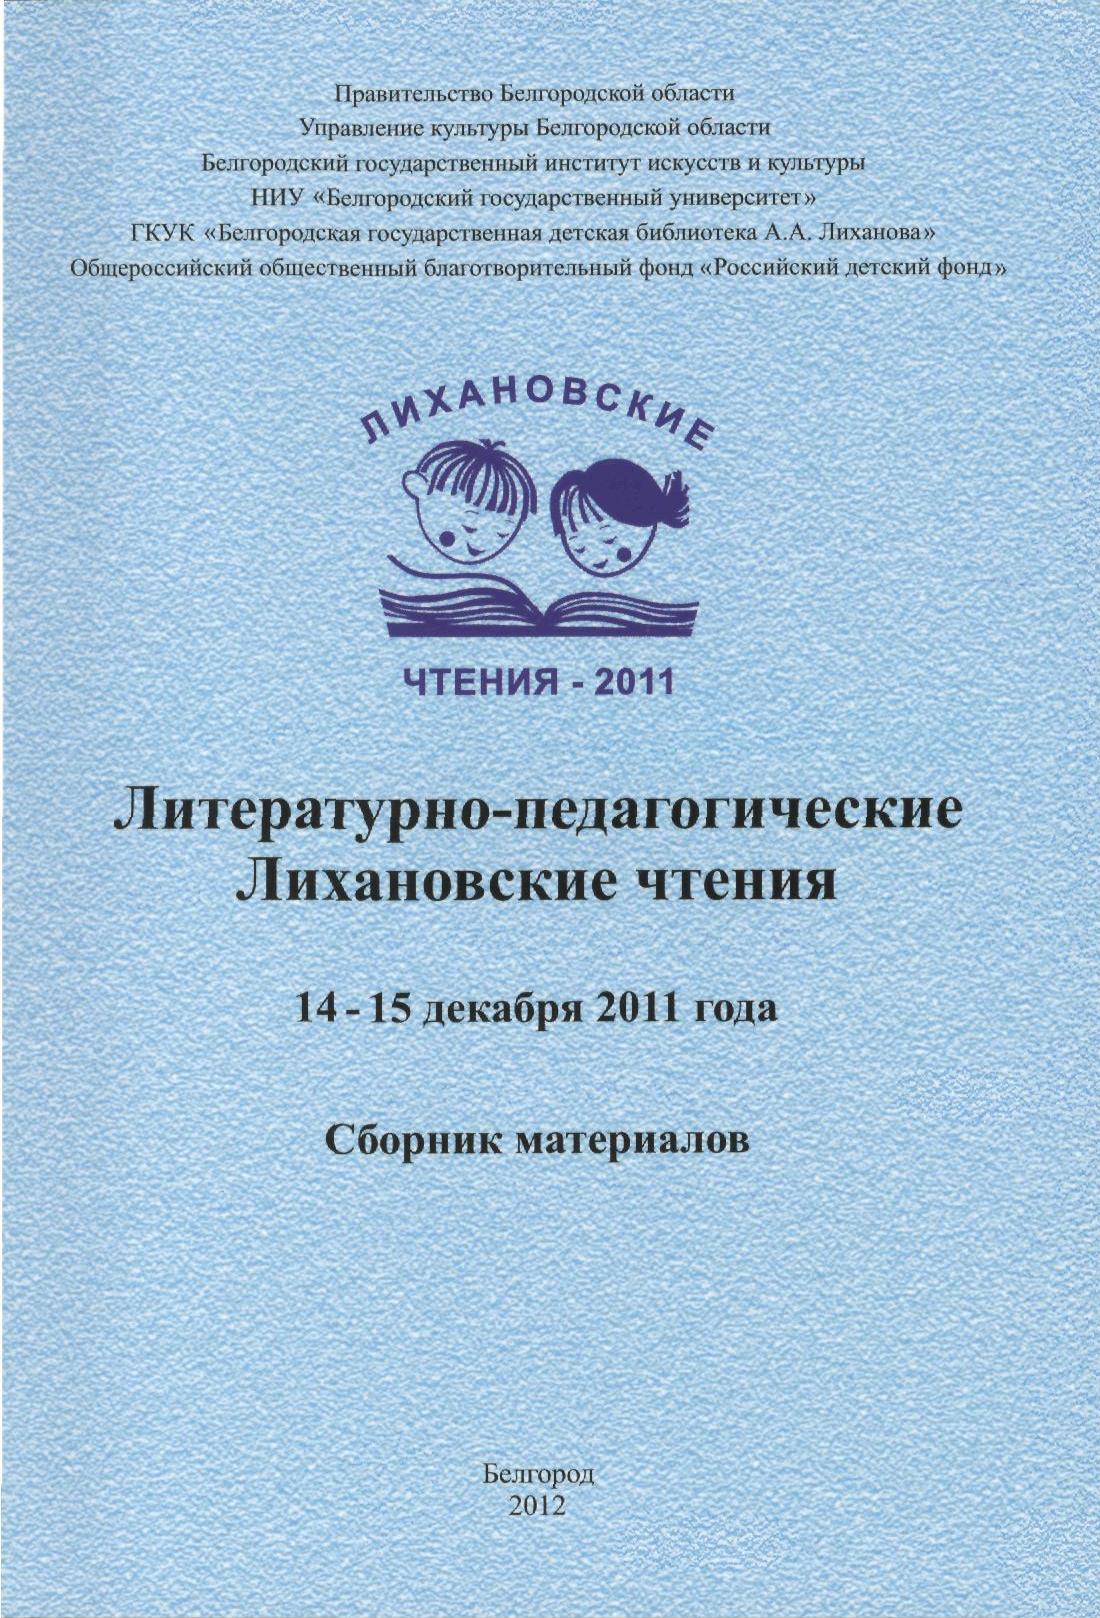 Литературно-педагогические Лихановские чтения 2011